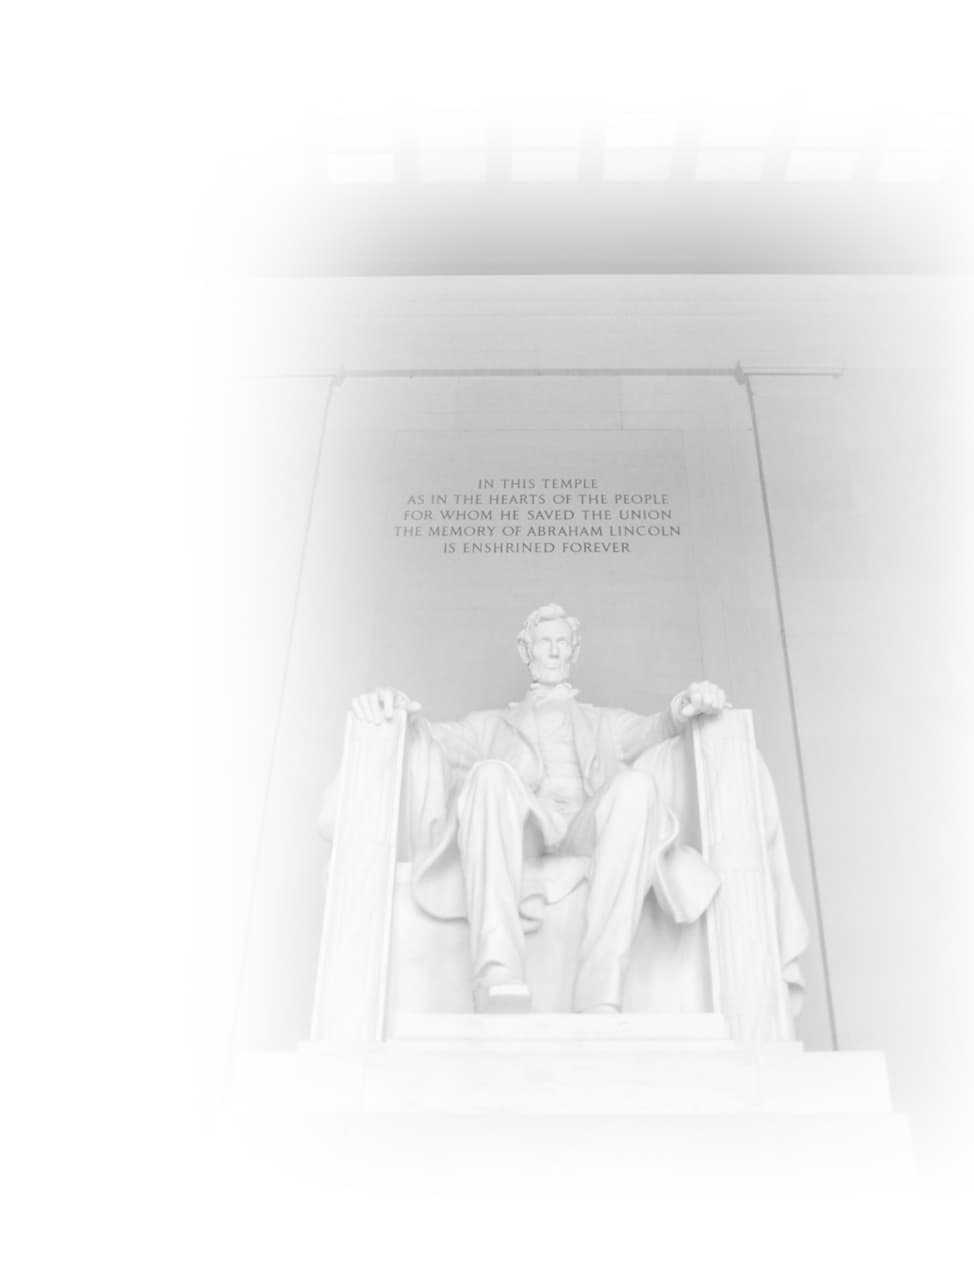 Abraham Lincoln's Statue